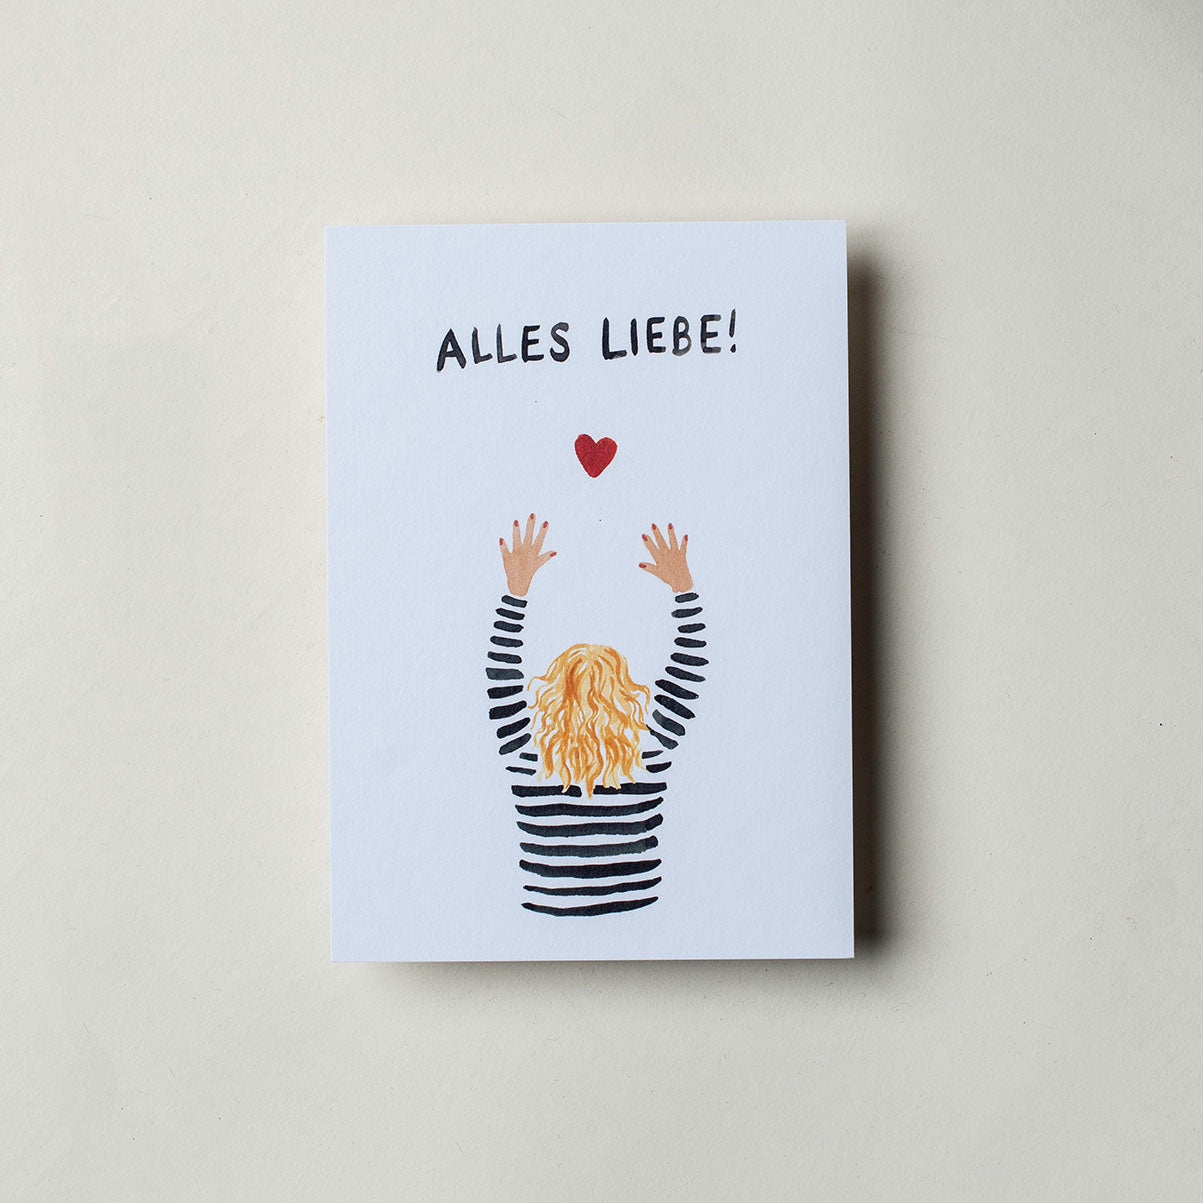 Postkarte mit der Aufschrift "Alles Liebe!" und einer bunten Zeichnung in der eine Person die Hände hoch hebt. Über den Händen und unter der Schrift ist ein rotes Herz gemalt.